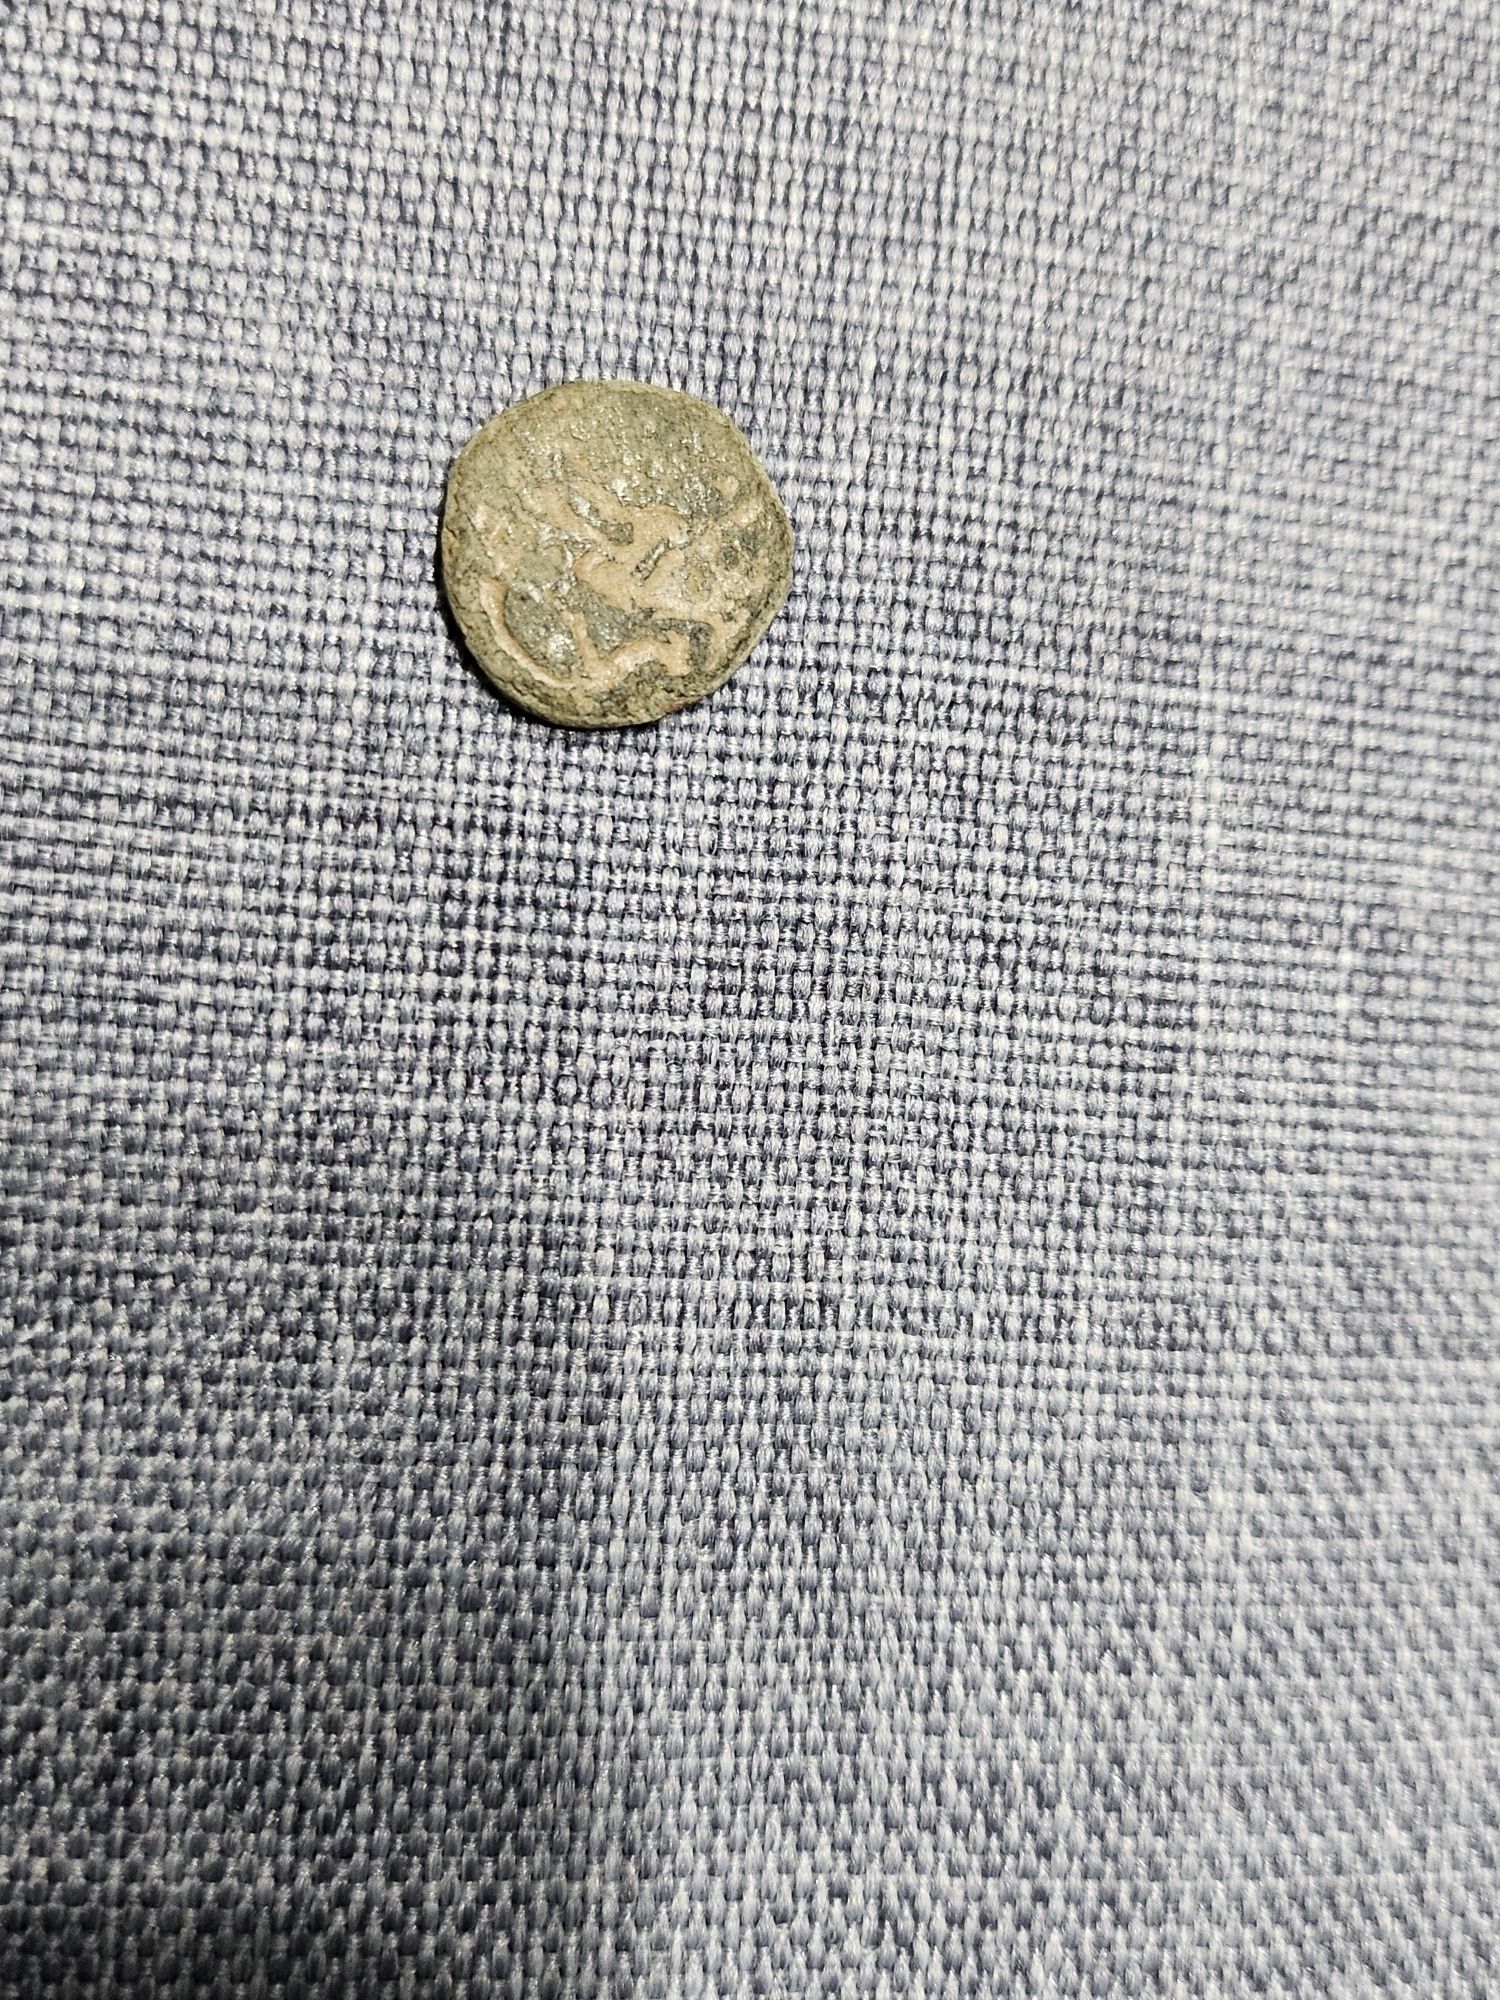 Продавам антични монети